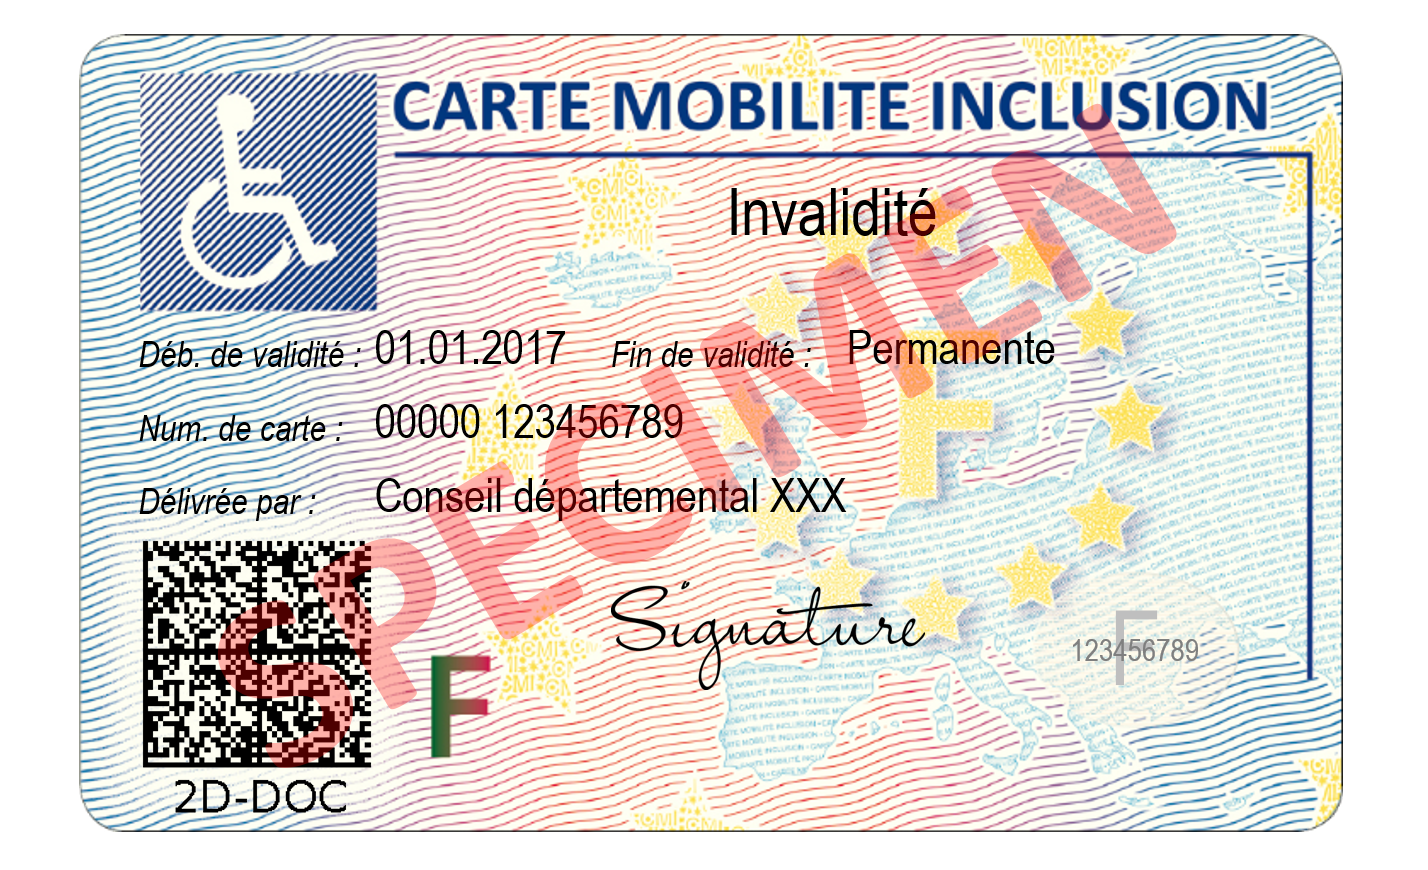 La carte mobilité inclusion : questions/réponses